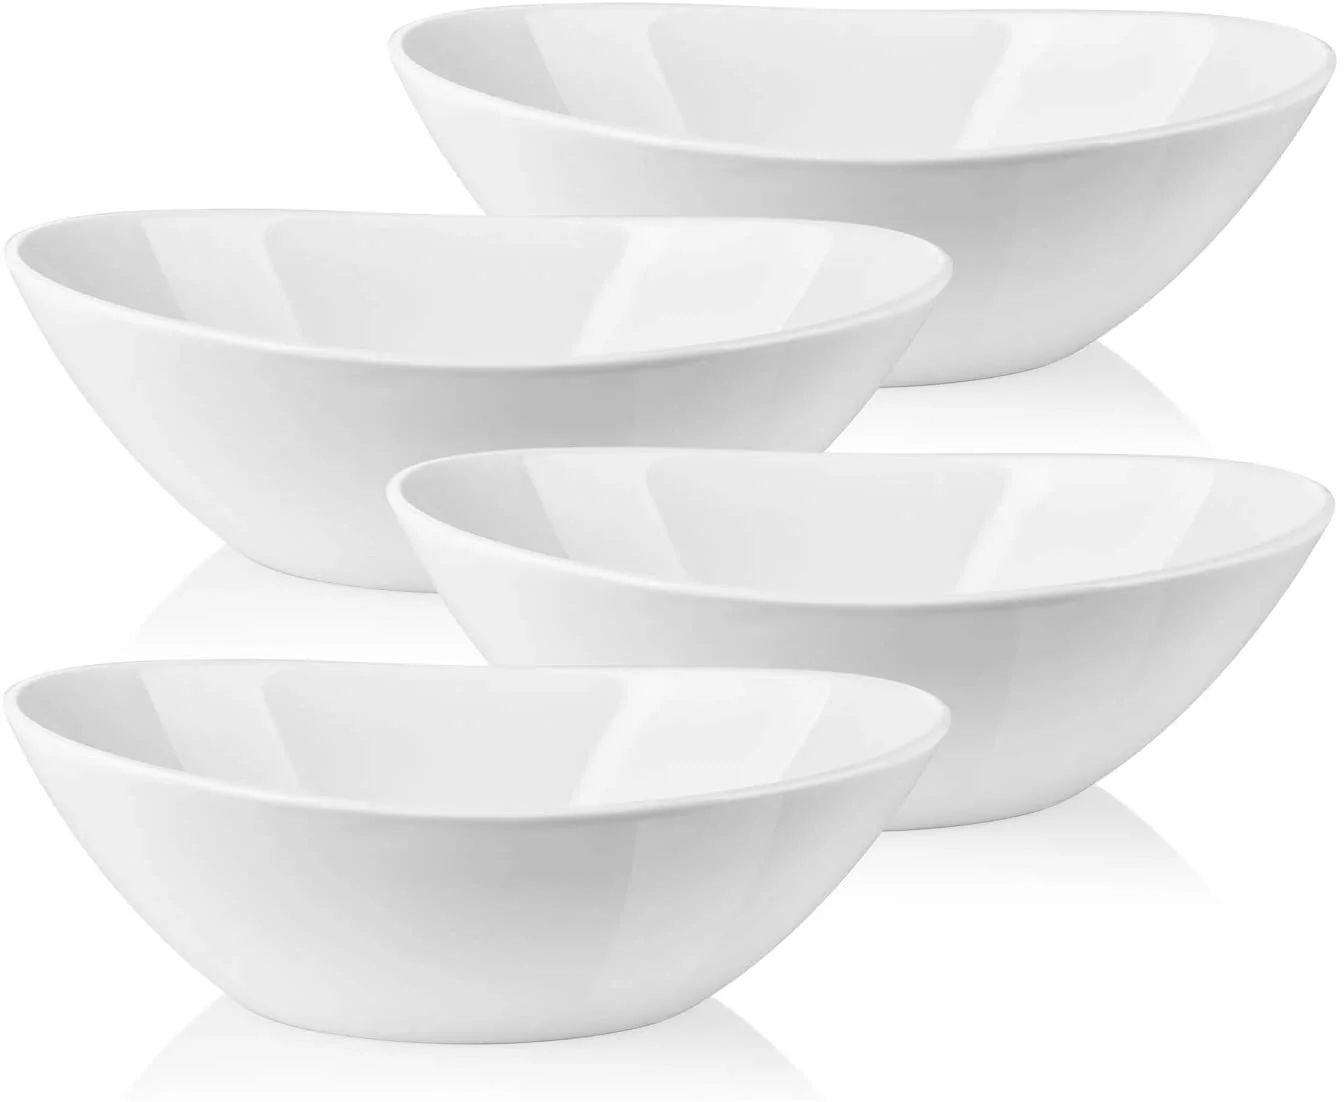 LIFVER 9inch Wavy  Serving Bowls Set of 4, Large Porcelain Salad/Side Dishes-36 oz, Oval Shape, W... | Walmart (US)